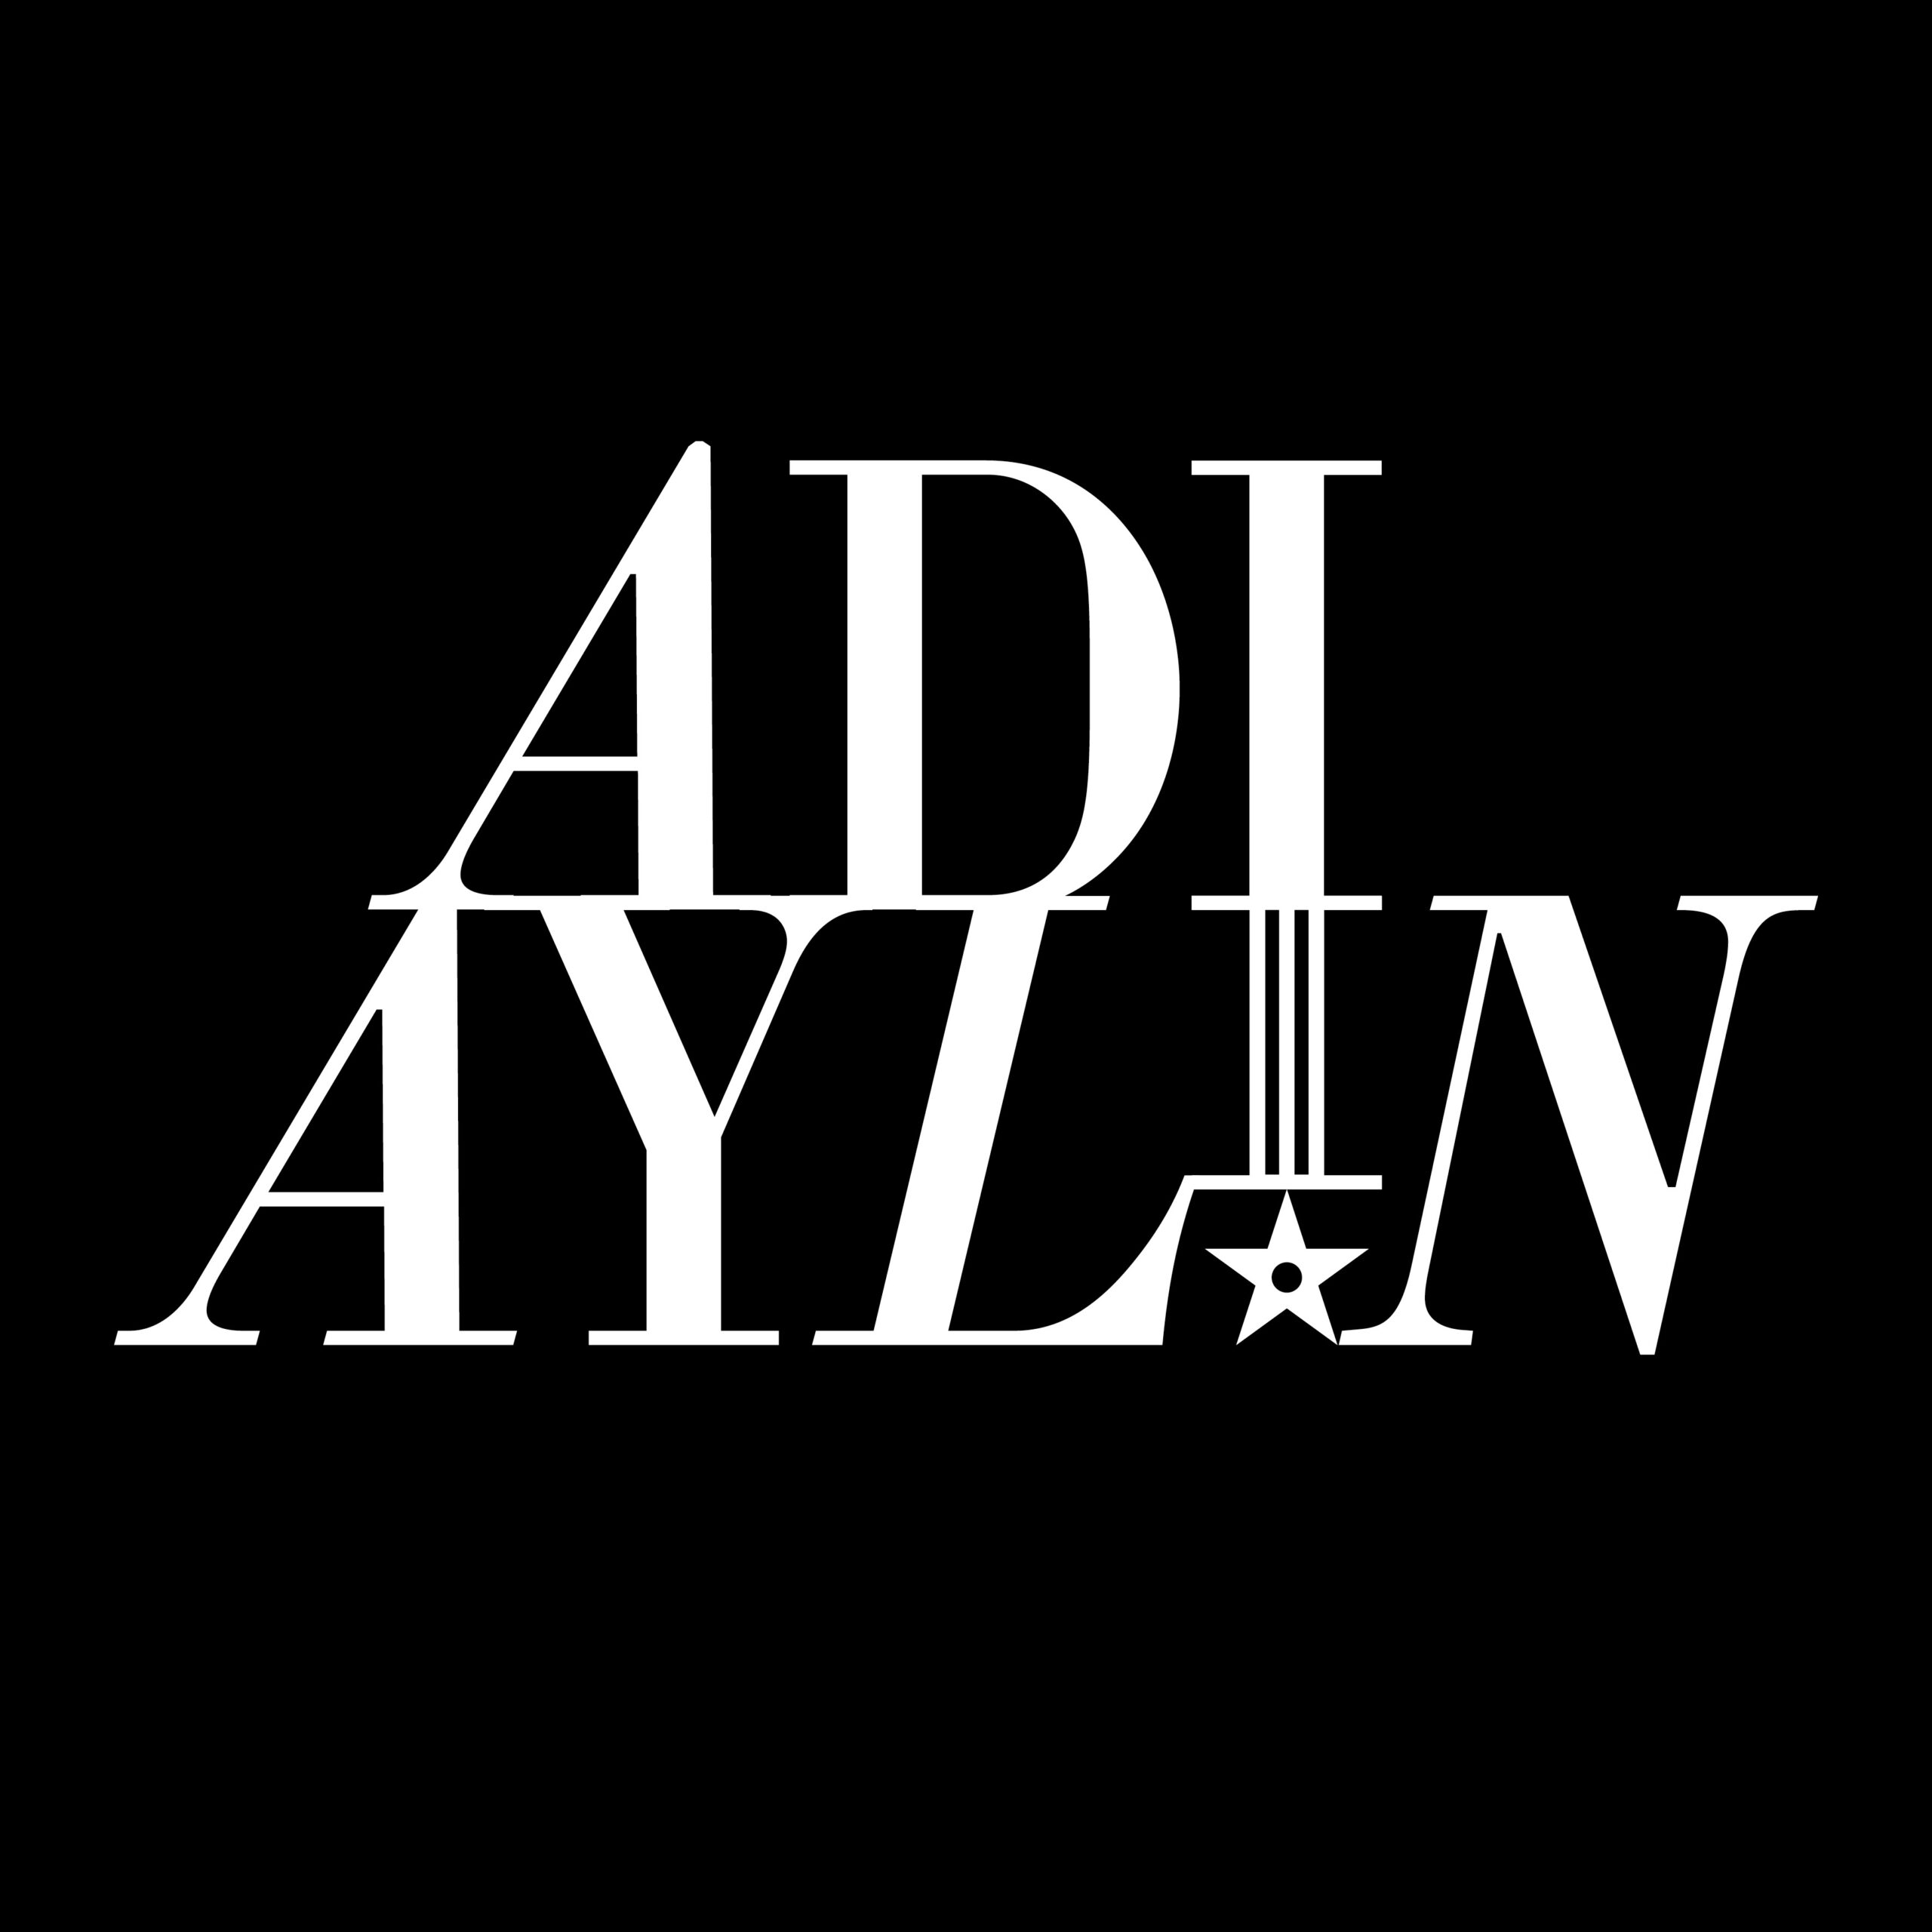 ADI AYLIN